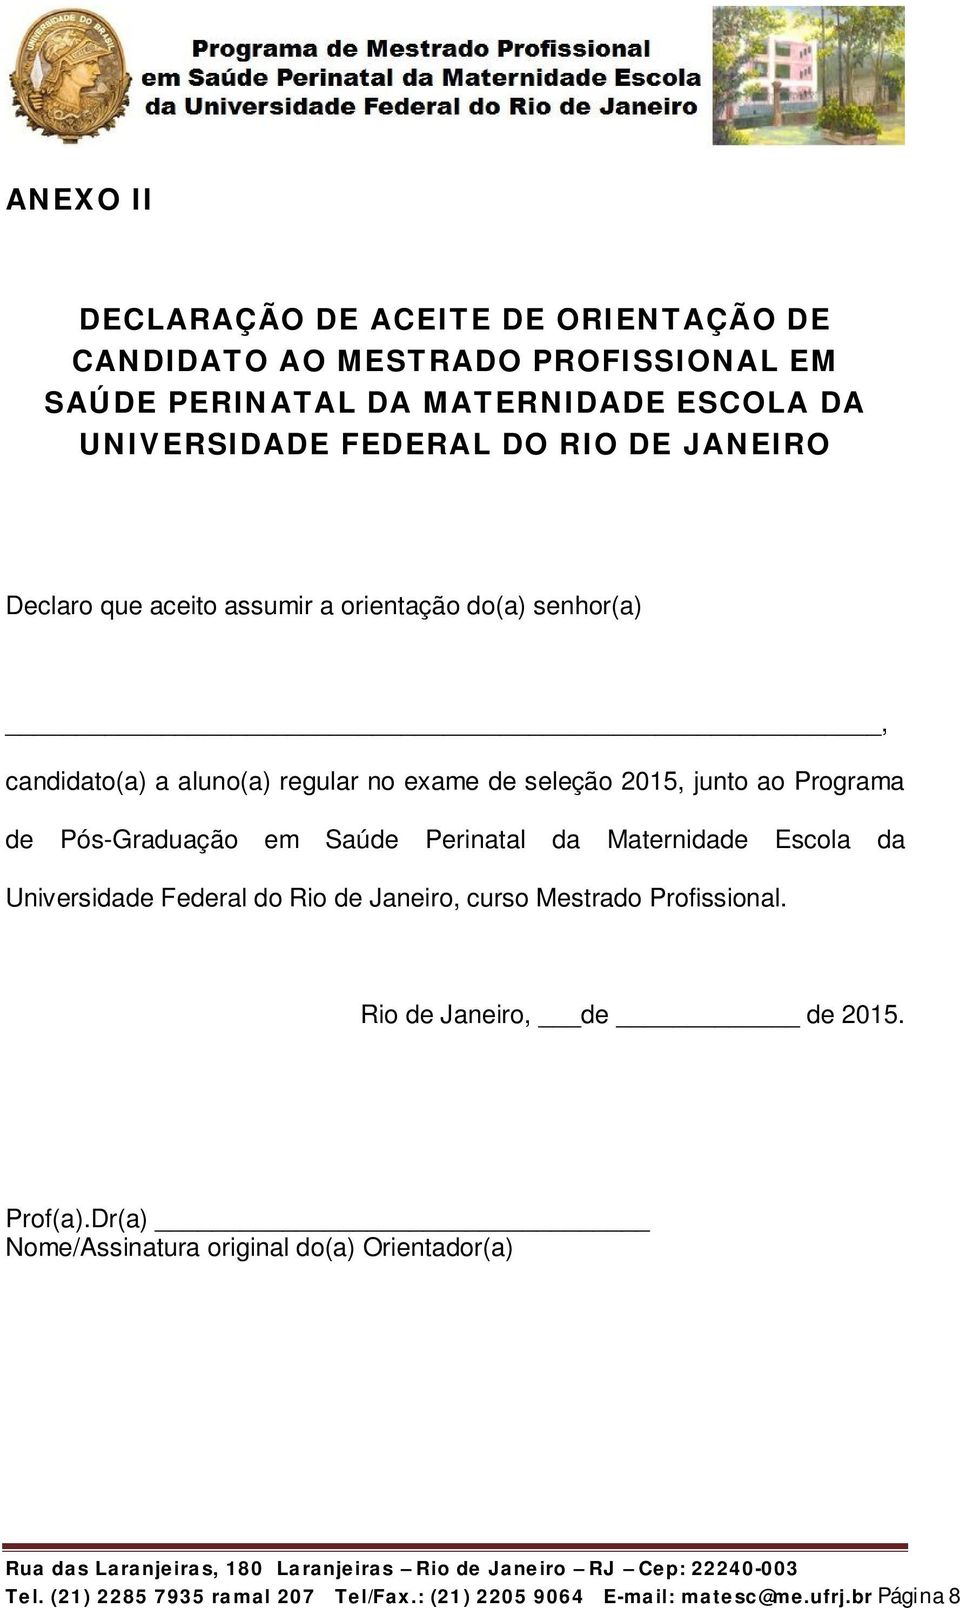 Pós-Graduação em Saúde Perinatal da Maternidade Escola da Universidade Federal do Rio de Janeiro, curso Mestrado Profissional.